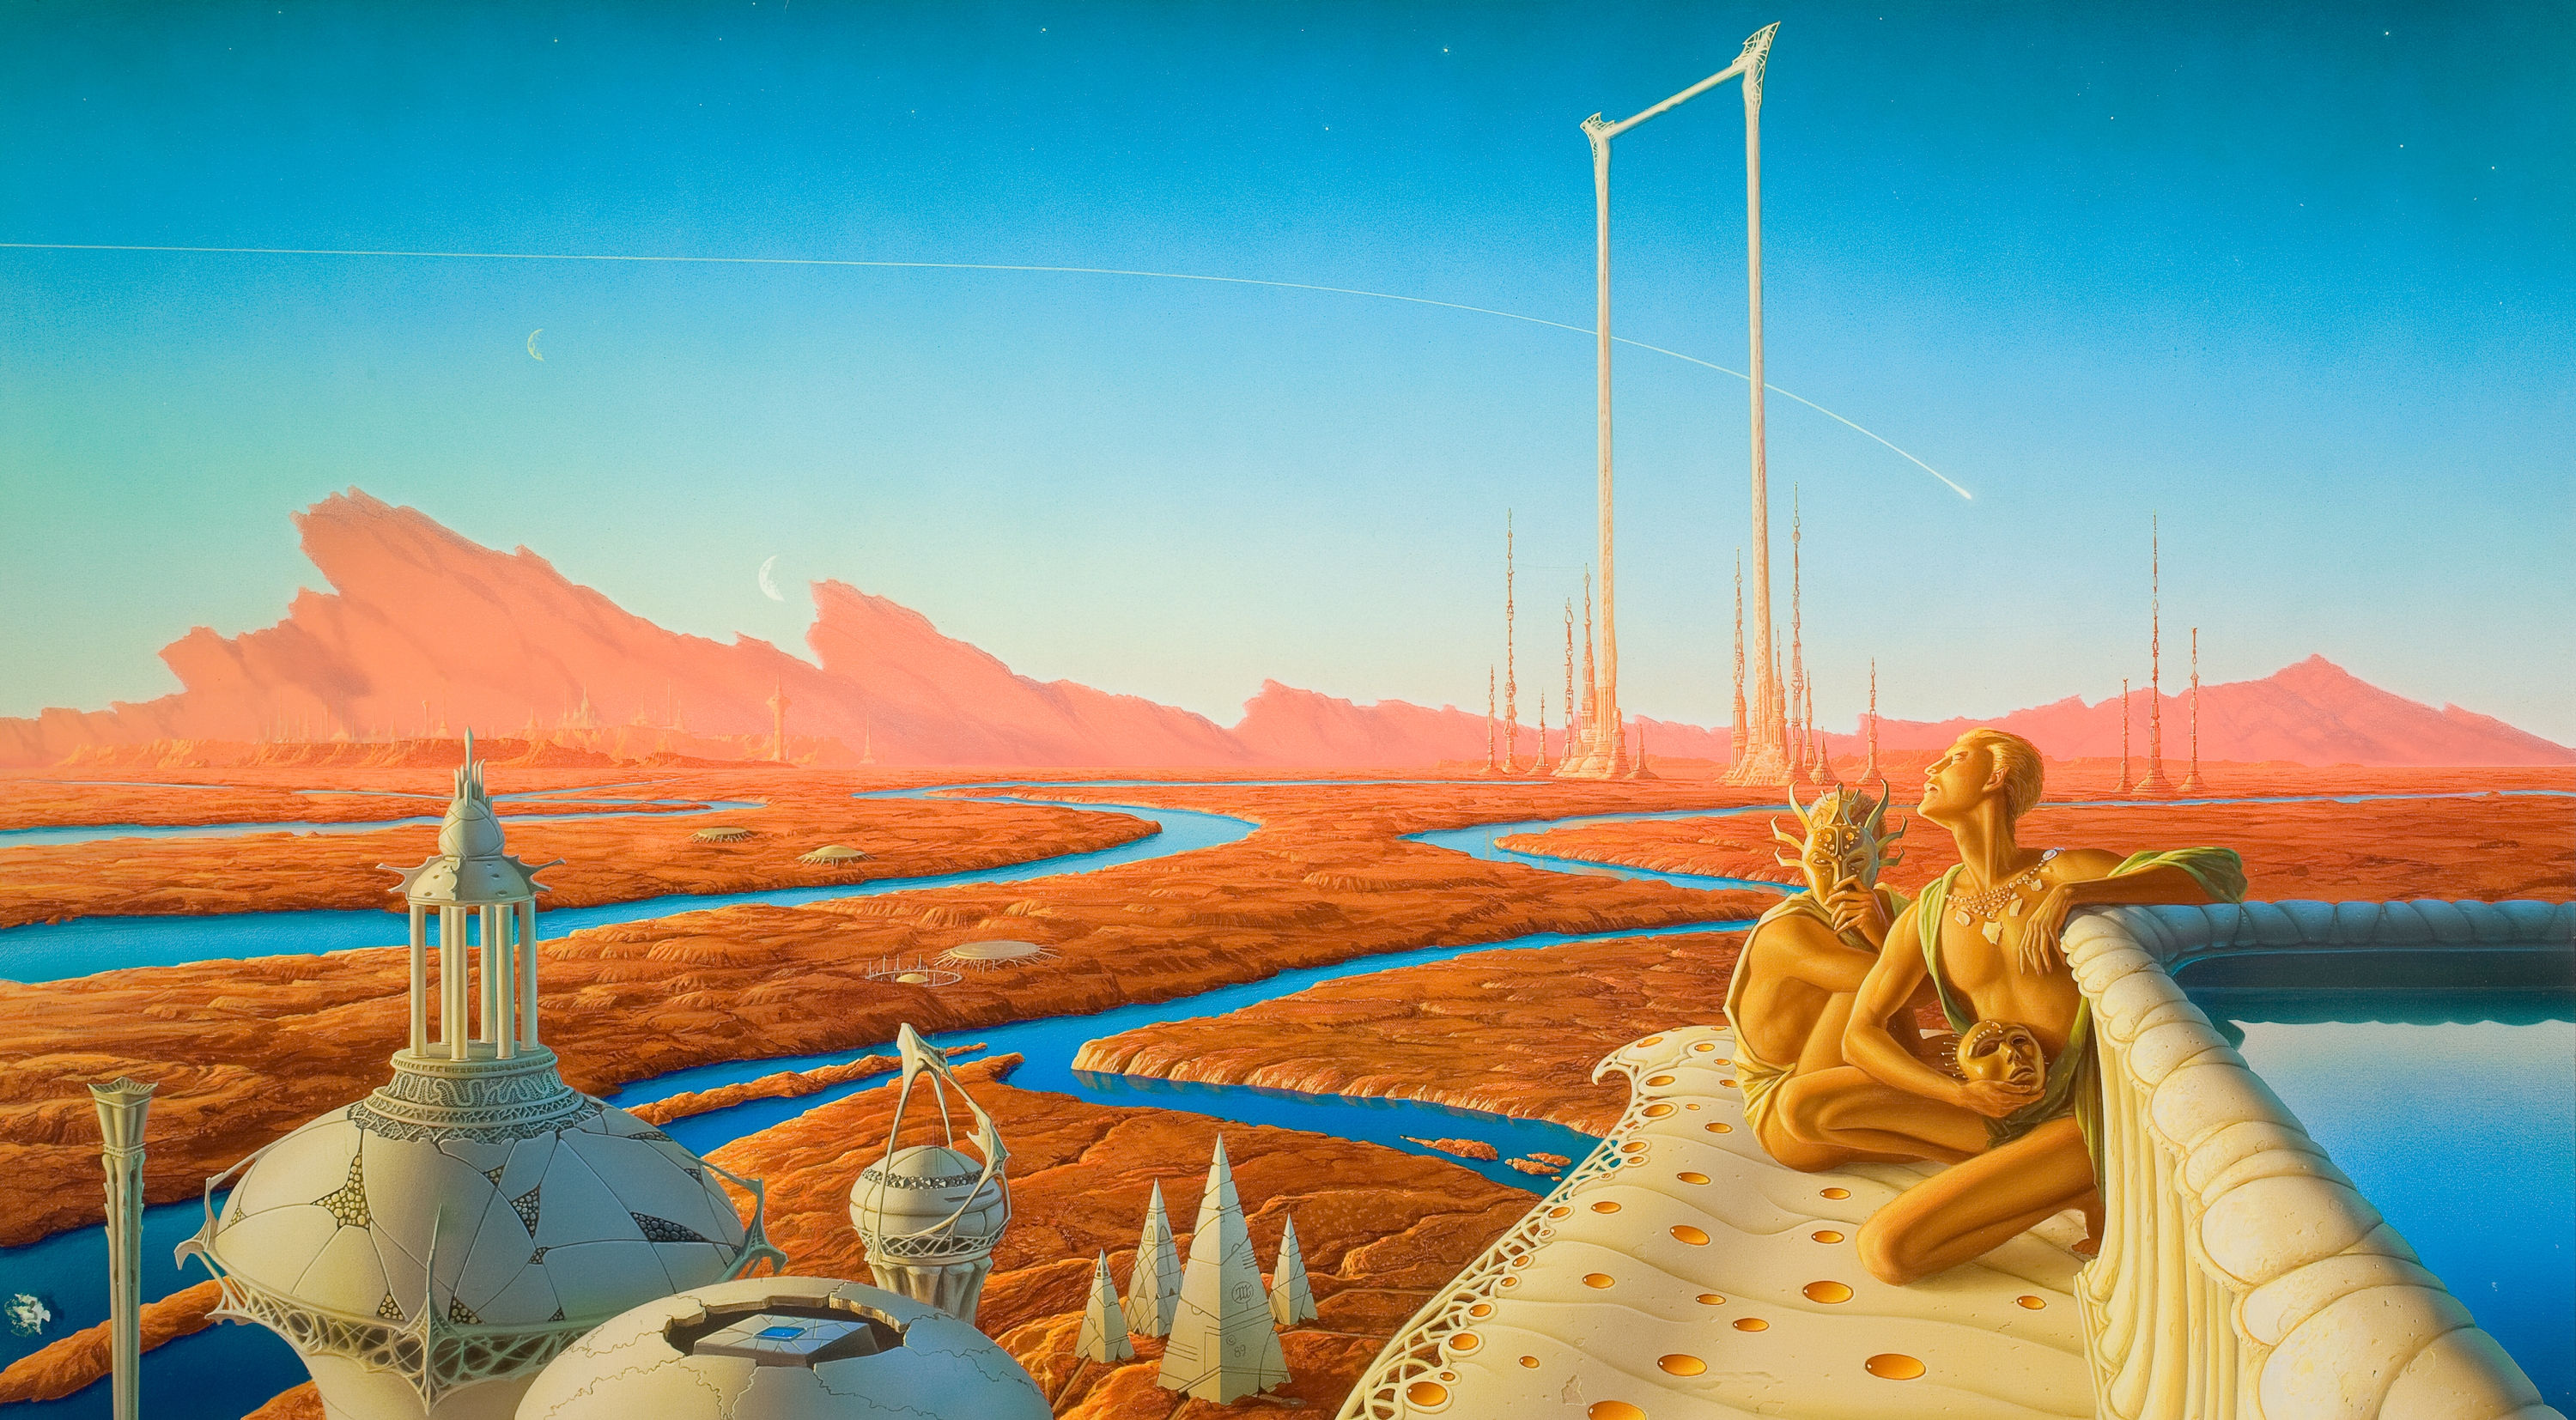 Artwork Painting Fantasy Art Space Sky Science Fiction Planet Landscape River Aliens 3000x1654